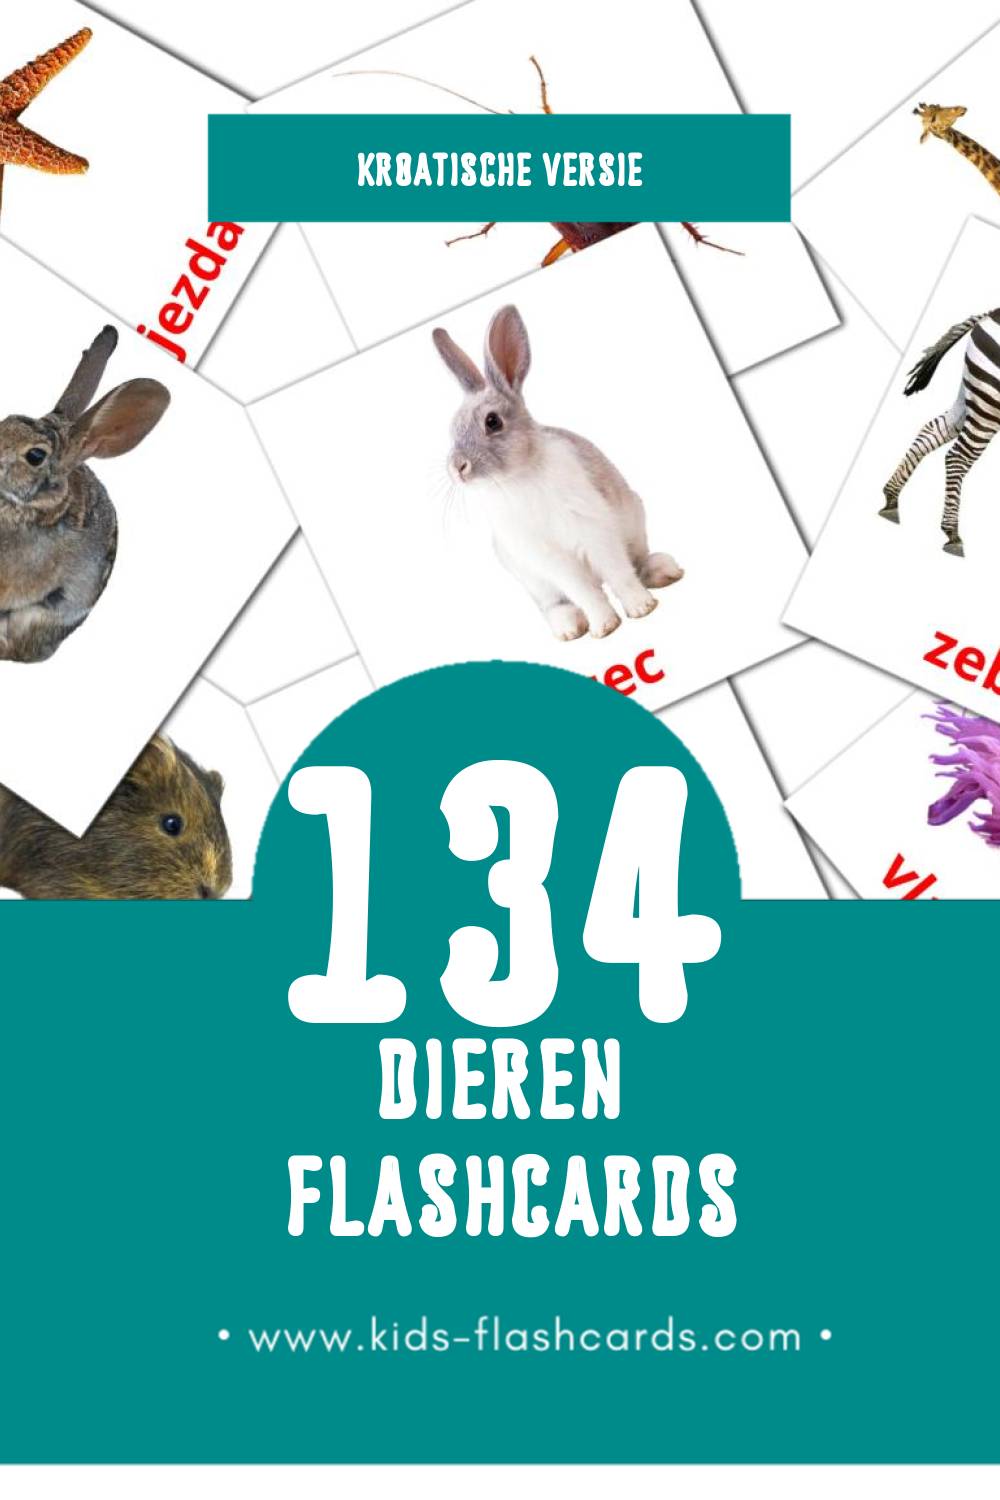 Visuele Životinje Flashcards voor Kleuters (134 kaarten in het Kroatisch)